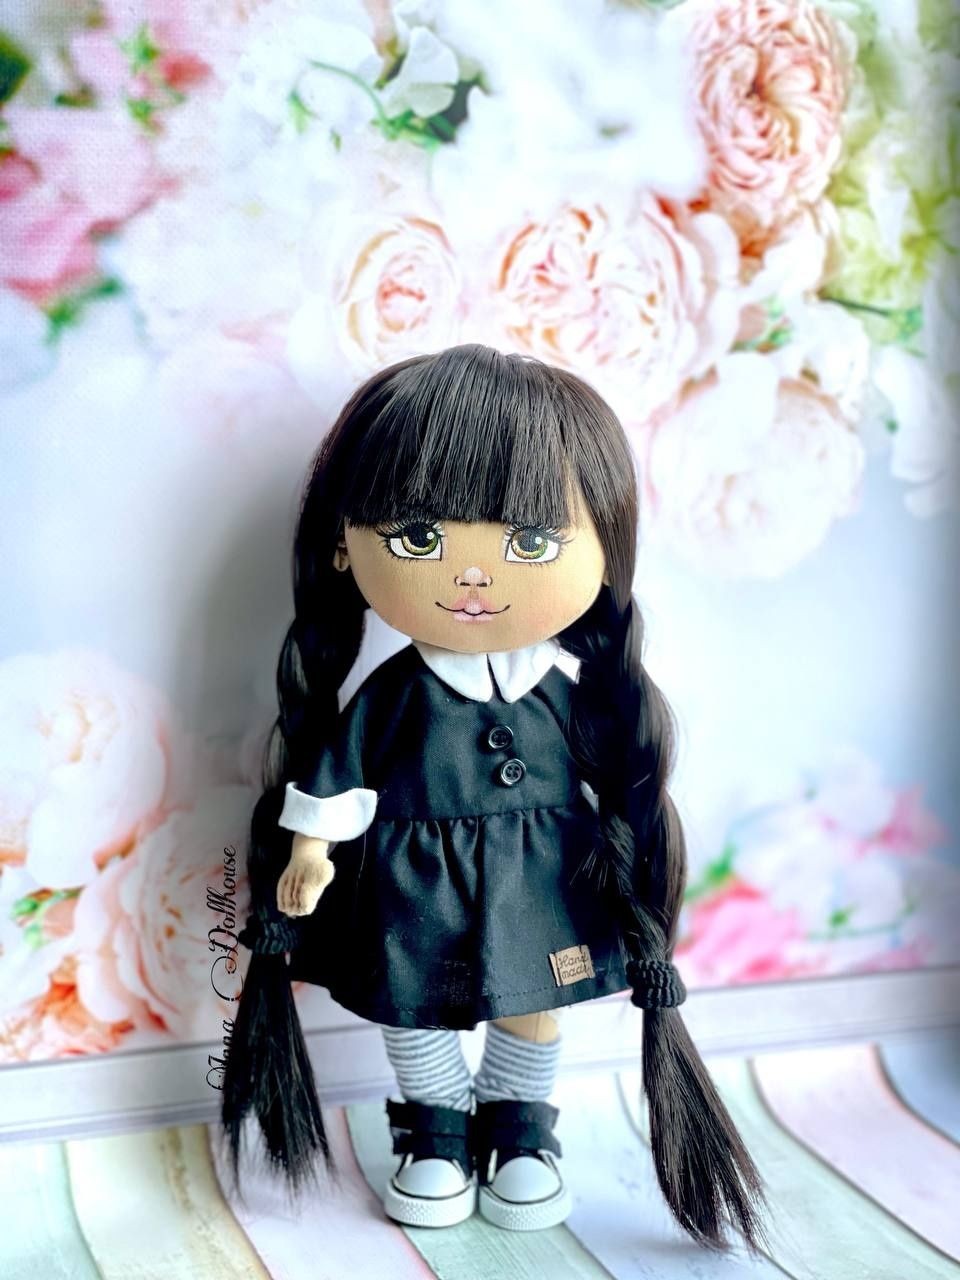 Лялька Венздей , текстильная кукла текстильна лялька,текстильная,автор